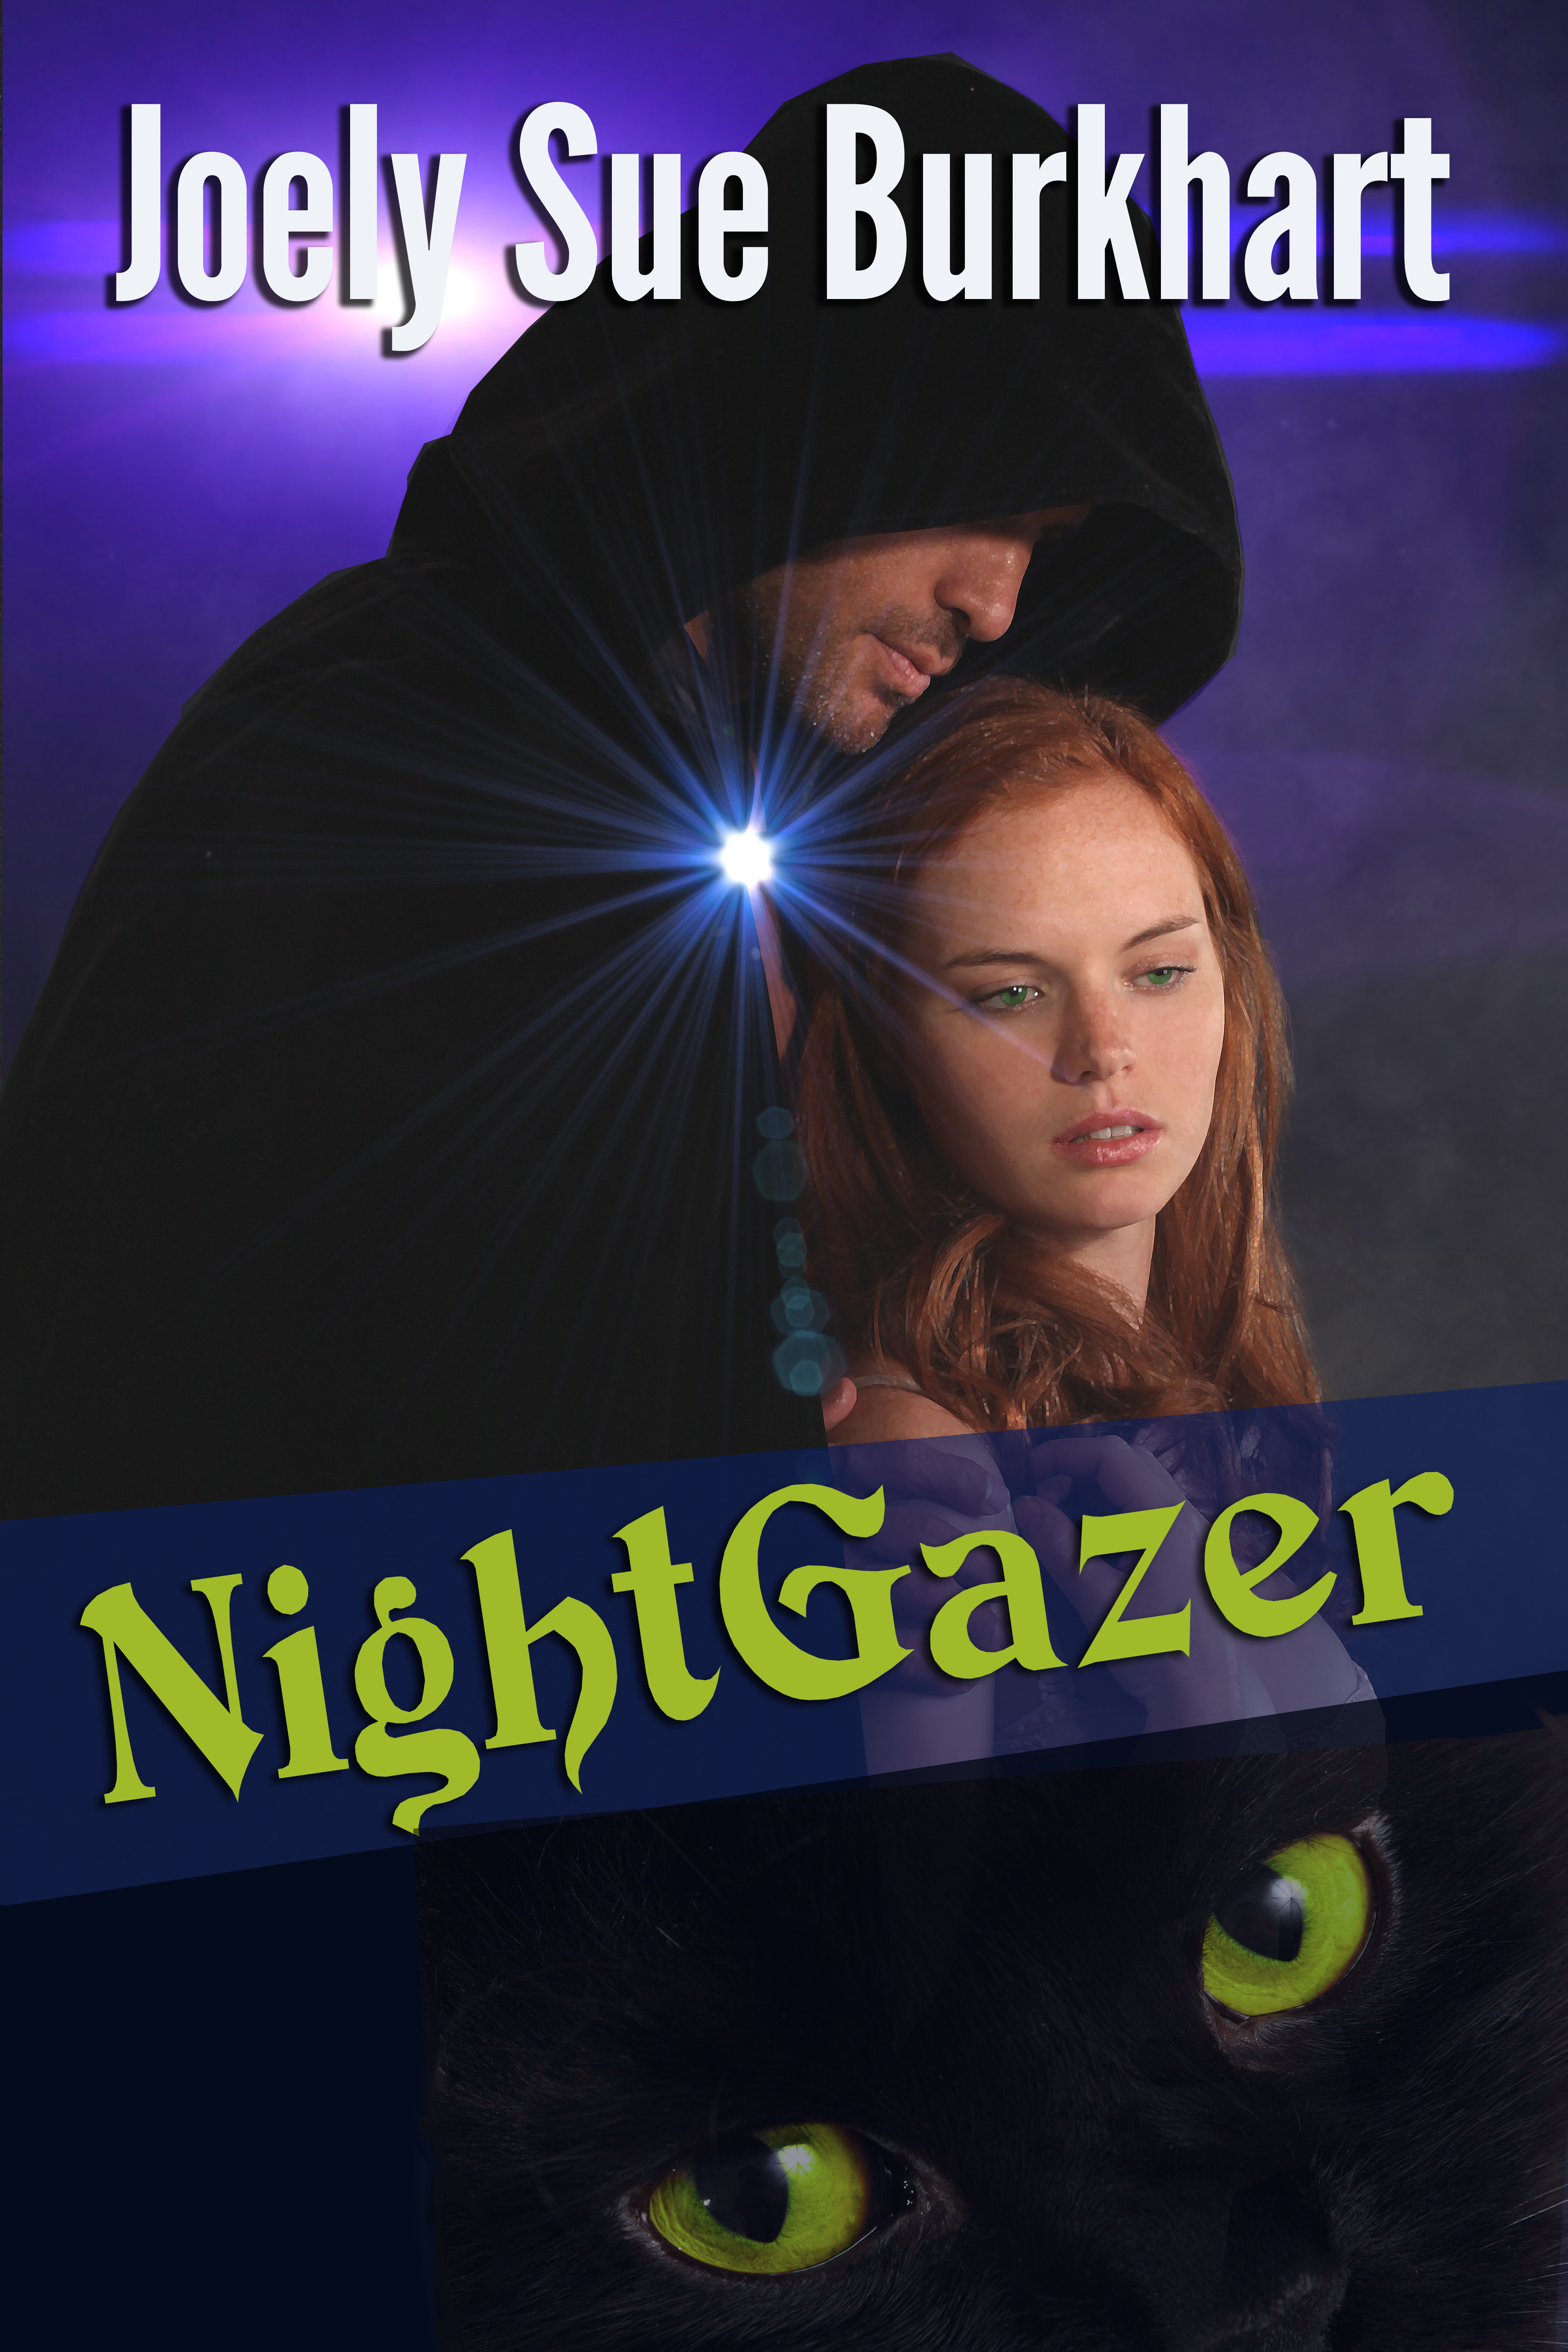 Nightgazer